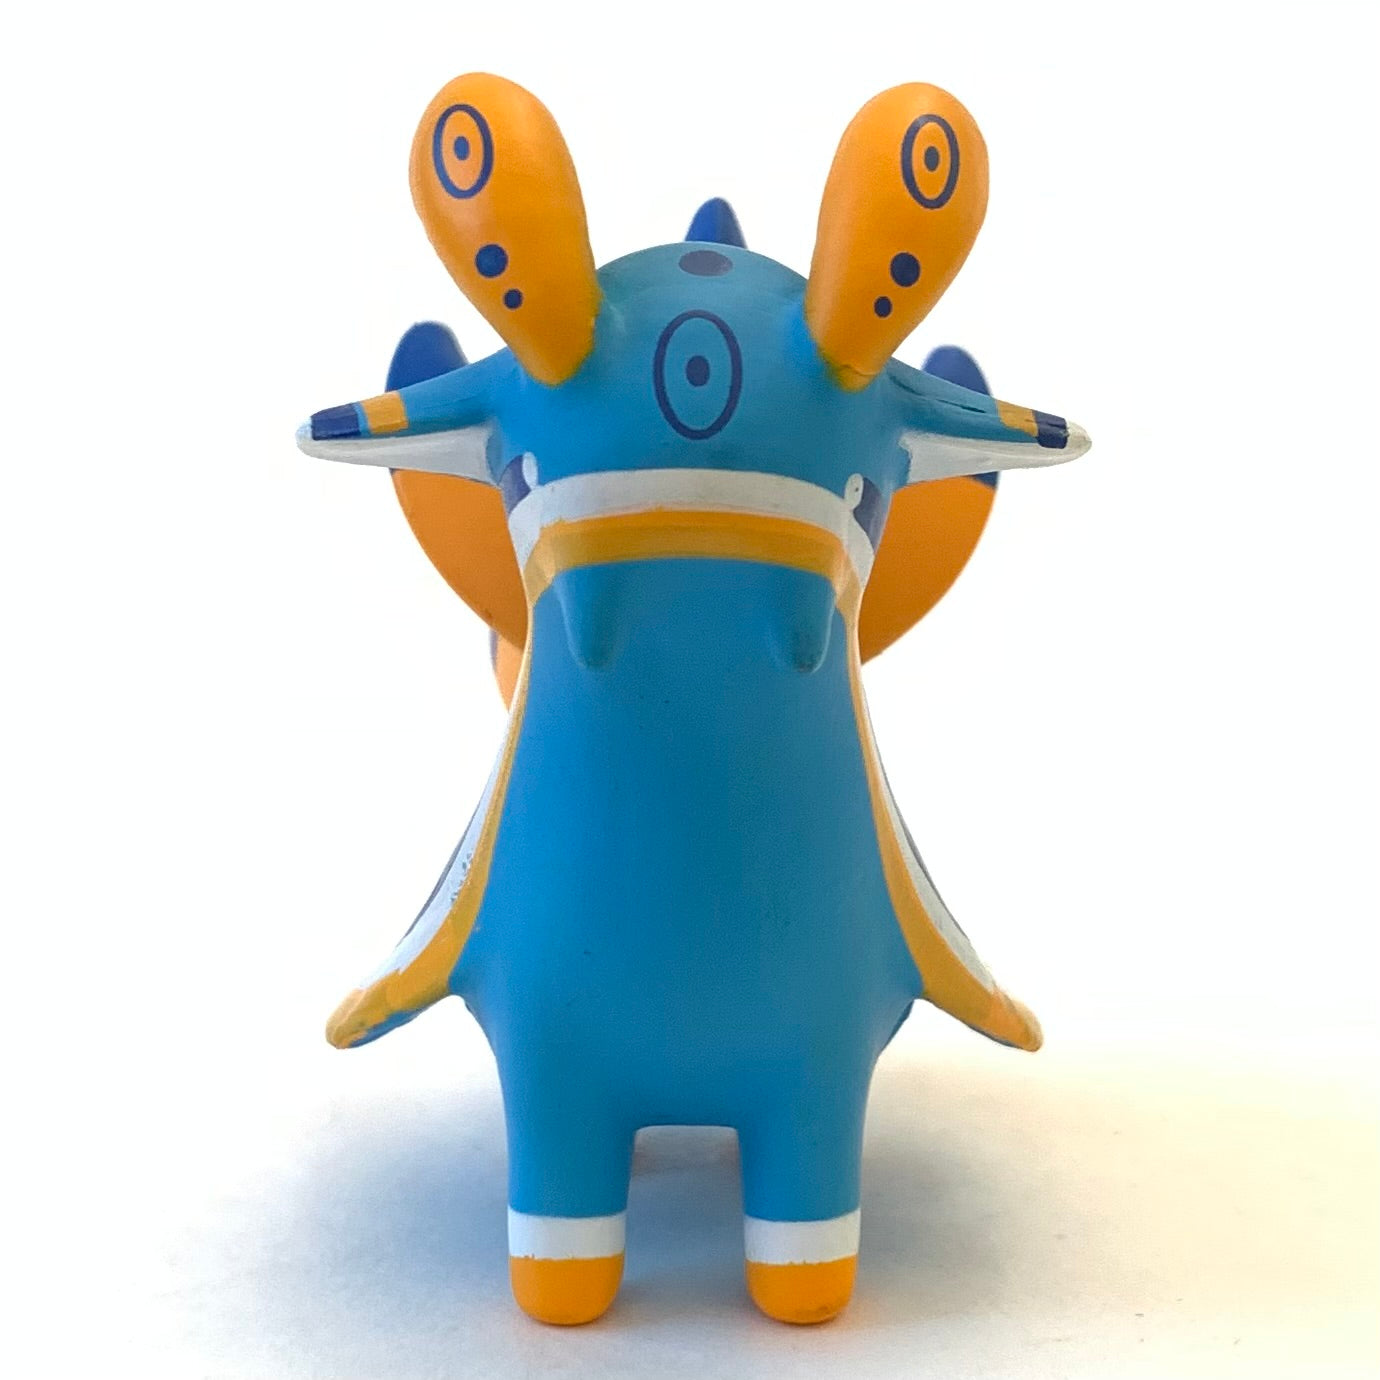 X 70912 Sea Slug Figurines Capsule-DISCONTINUED